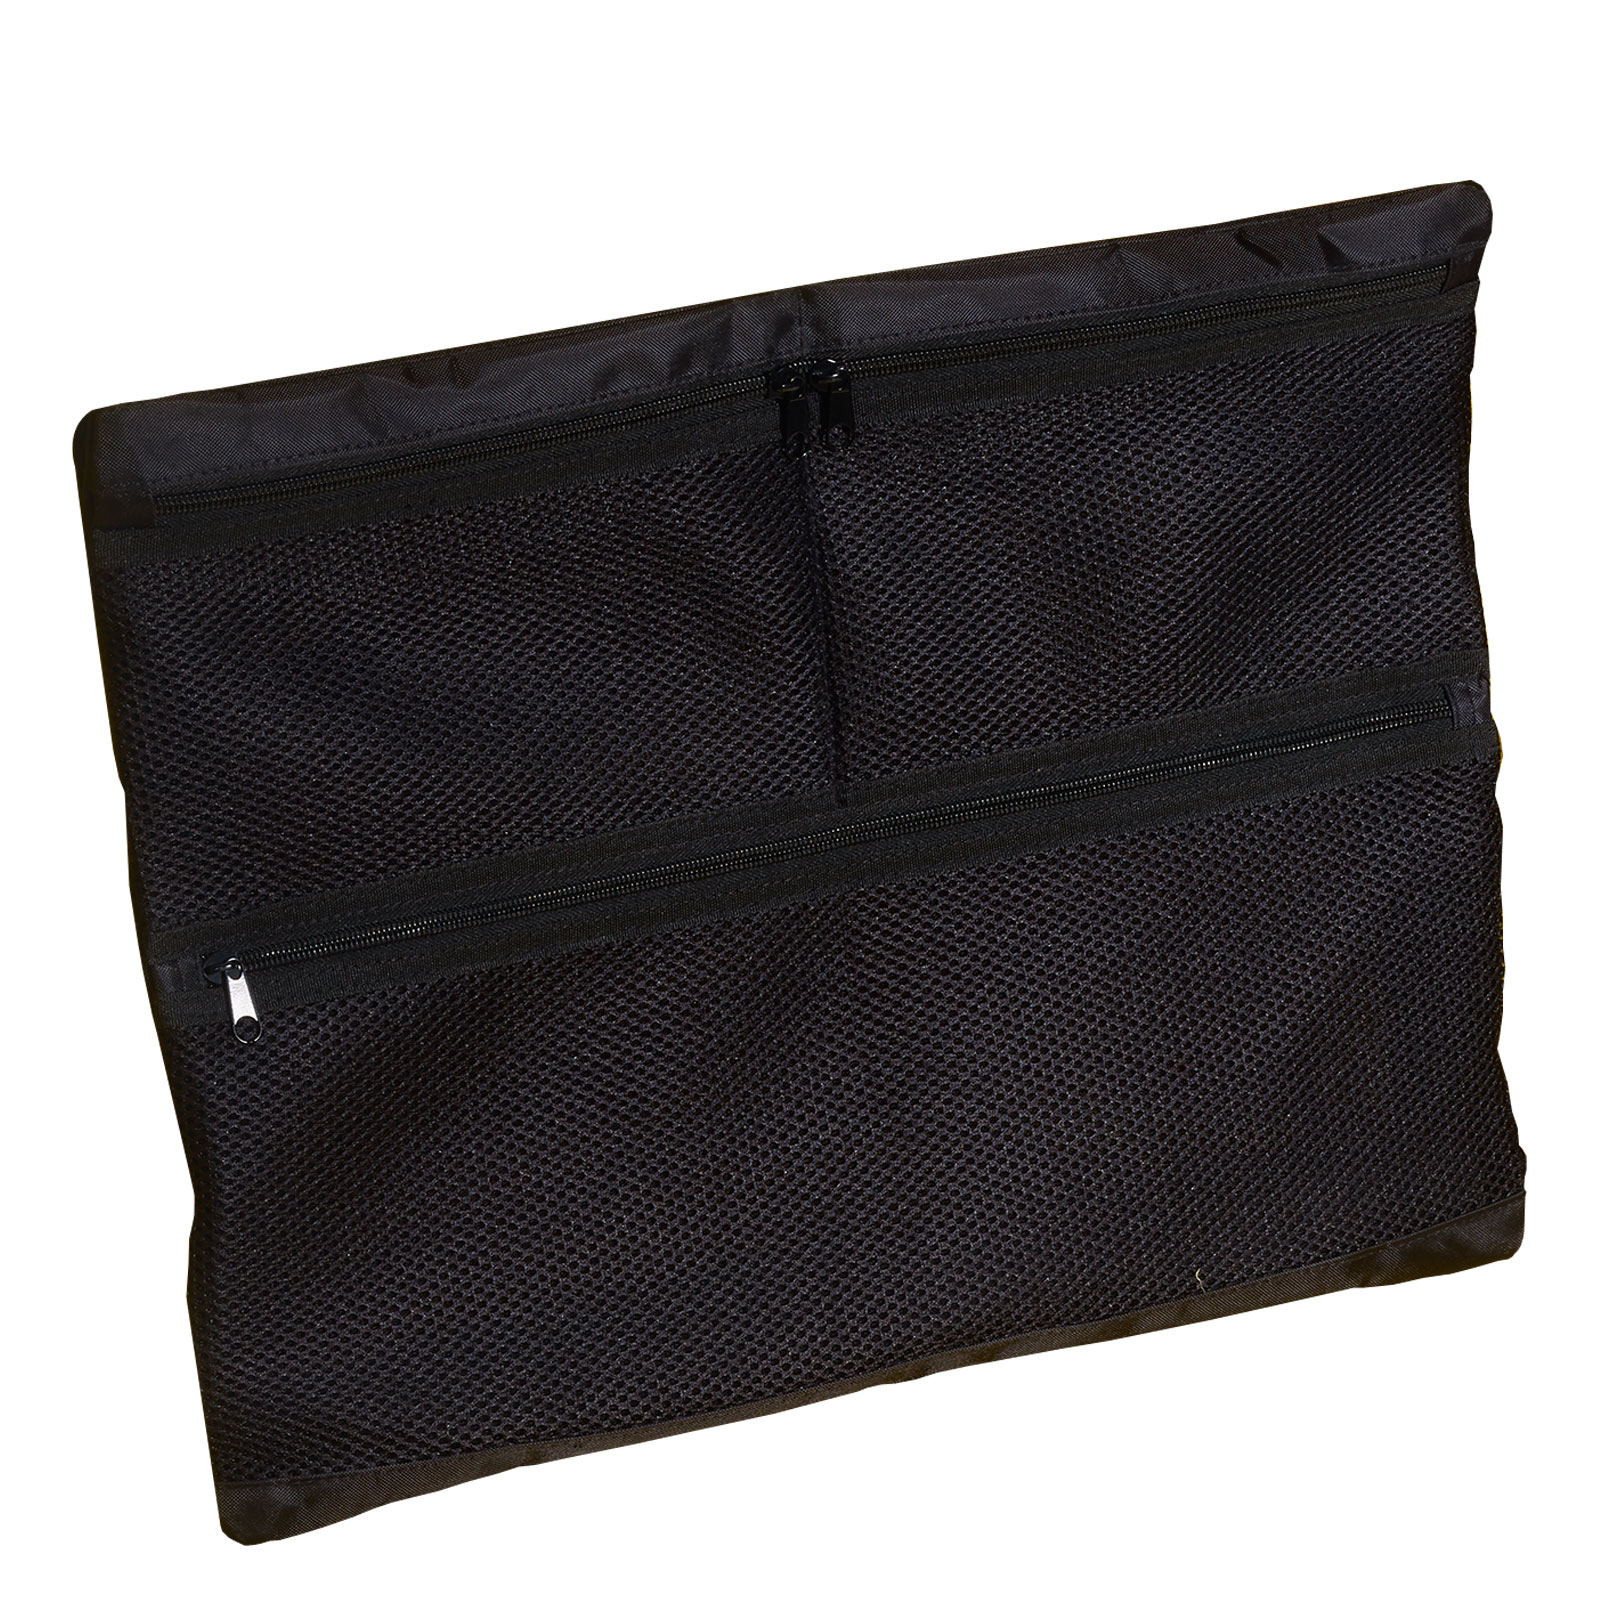 B&W Netz-Deckeltasche für Outdoor Cases, Typ 6700